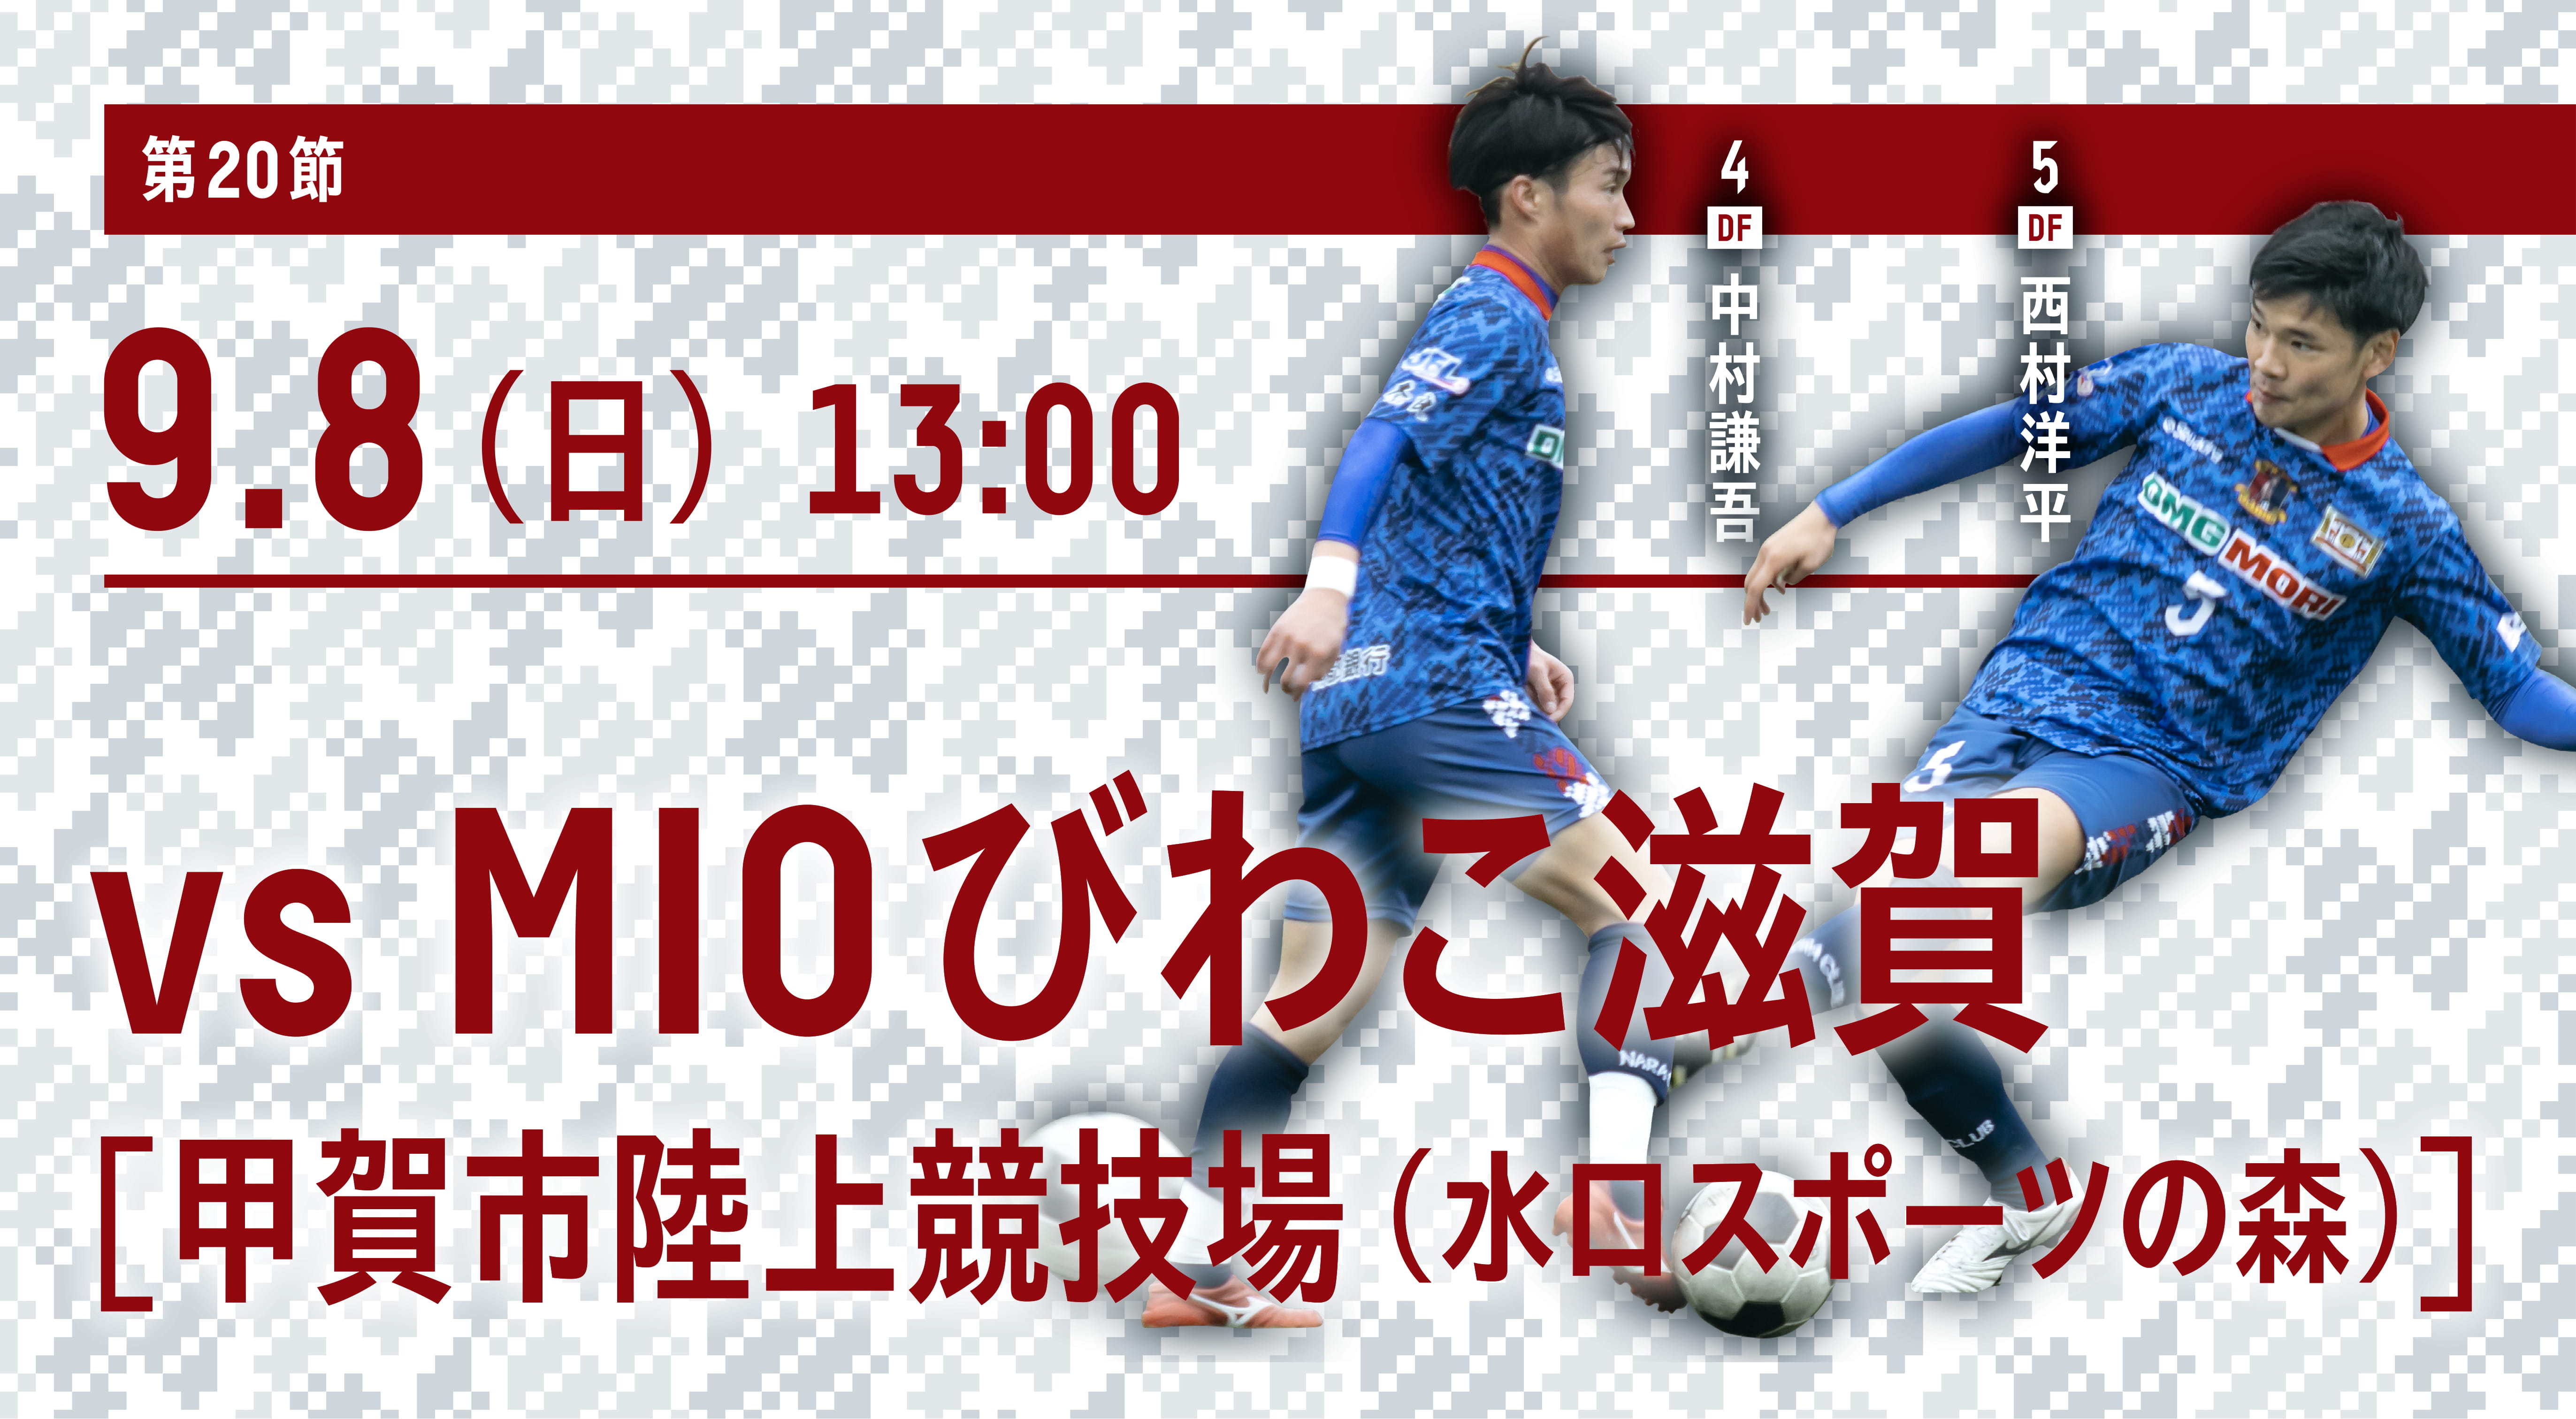 9 8 日 Mioびわこ滋賀戦 Away 試合情報 奈良クラブ Nara Club Official Site